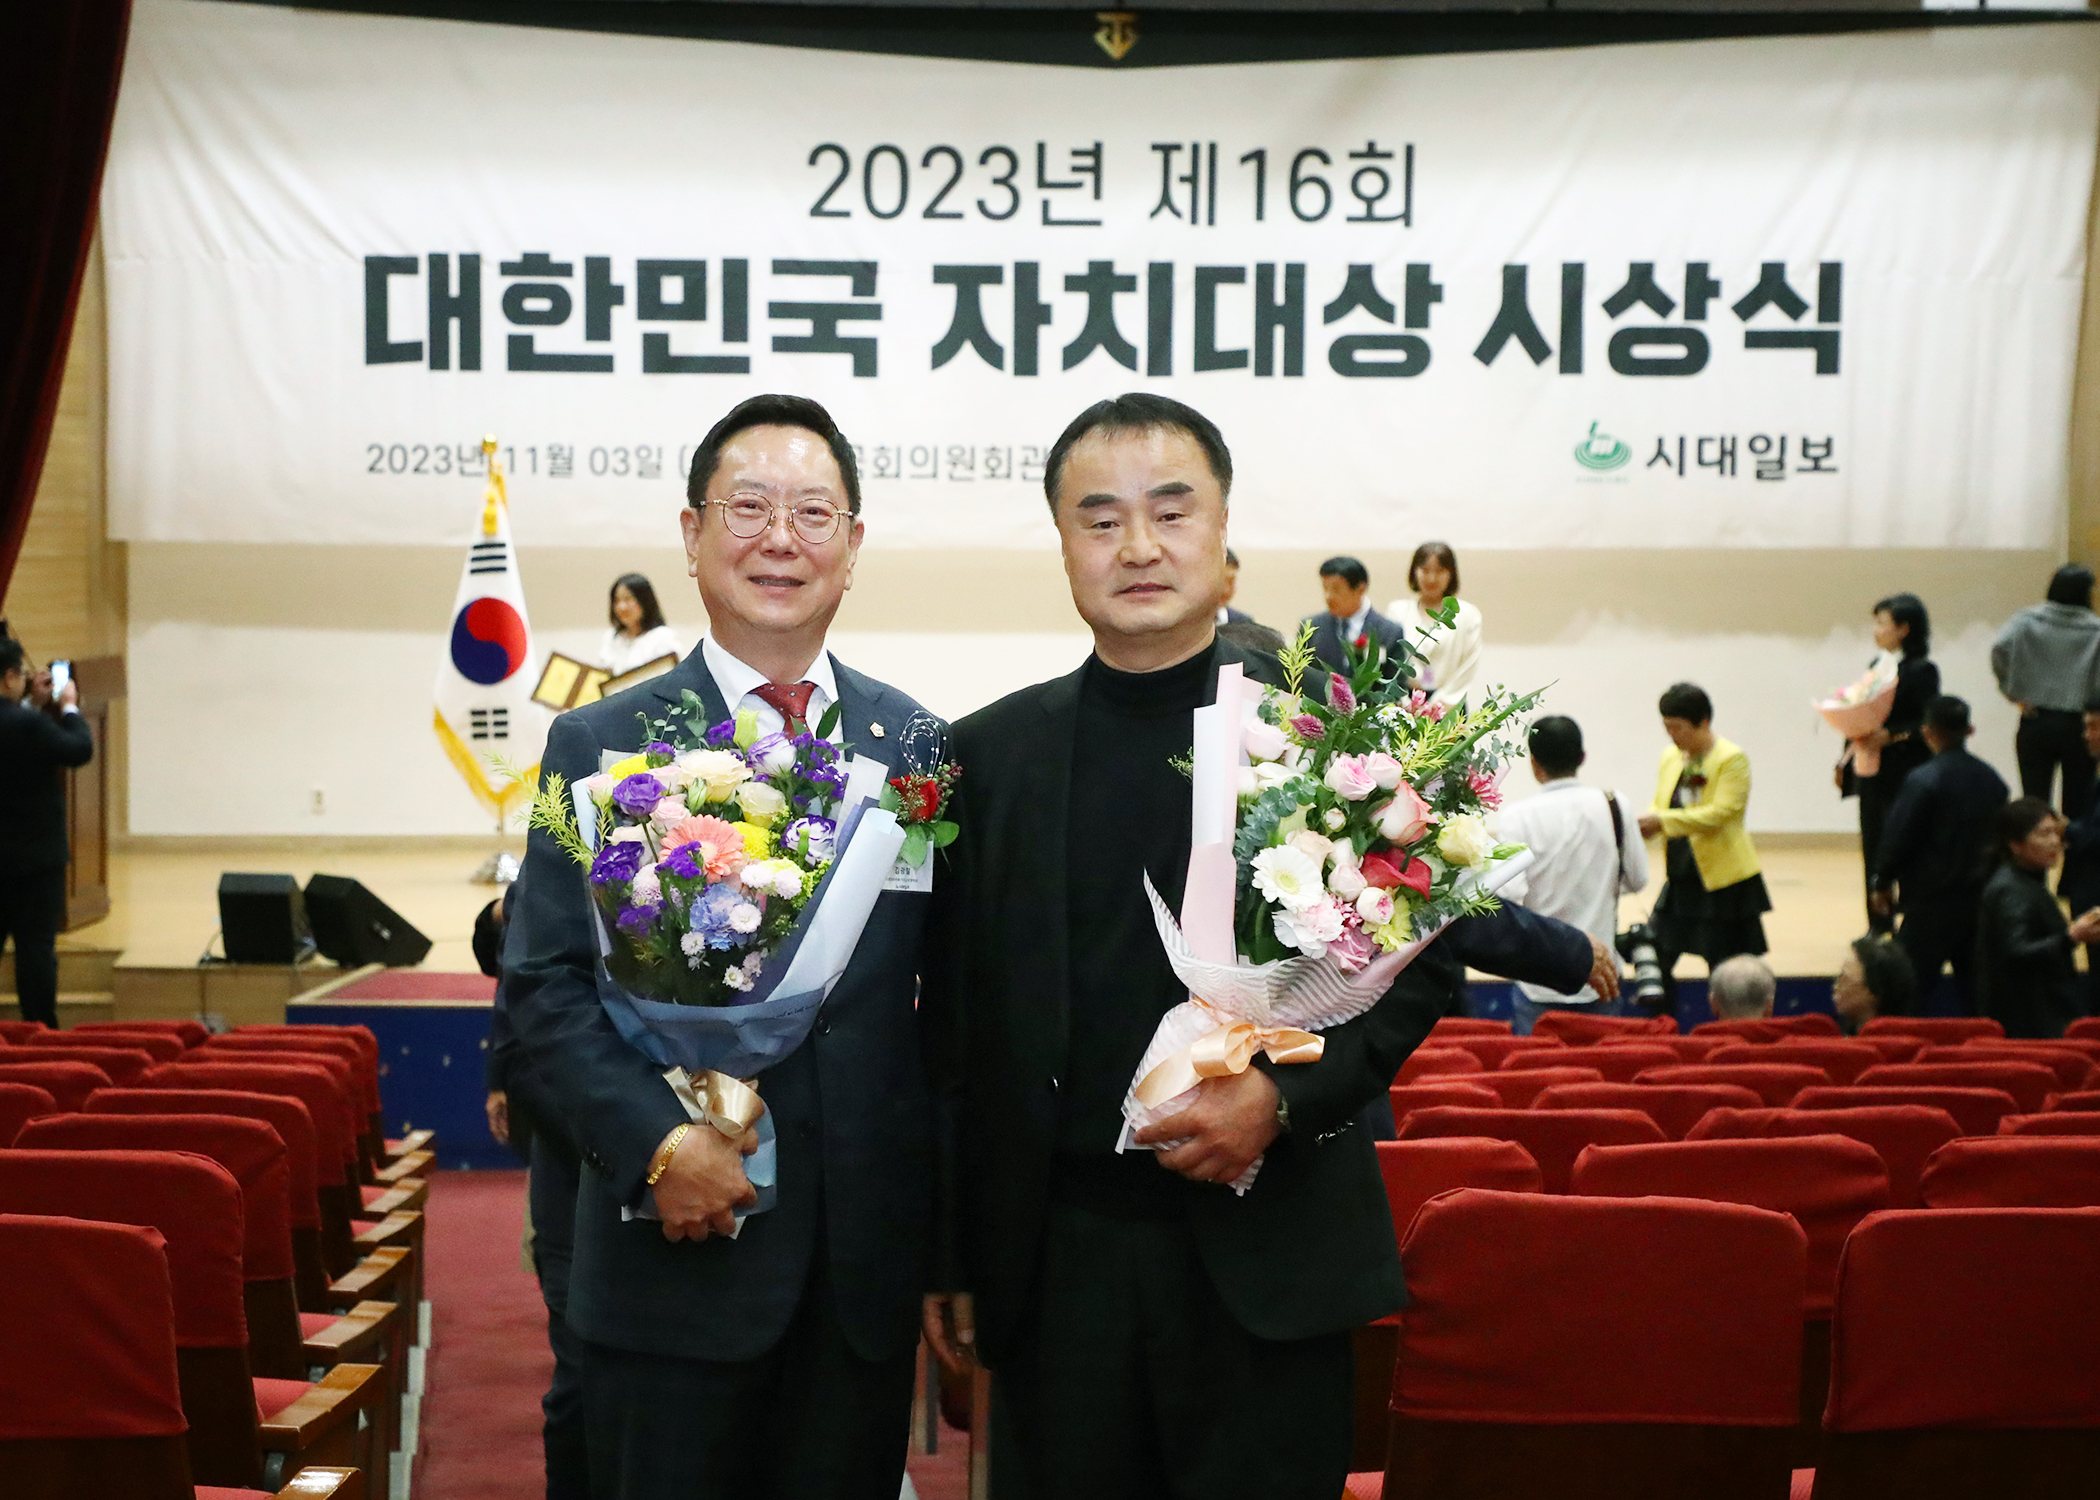 2023년 제16회 대한민국 자치대상 경영대상 수상 - 11